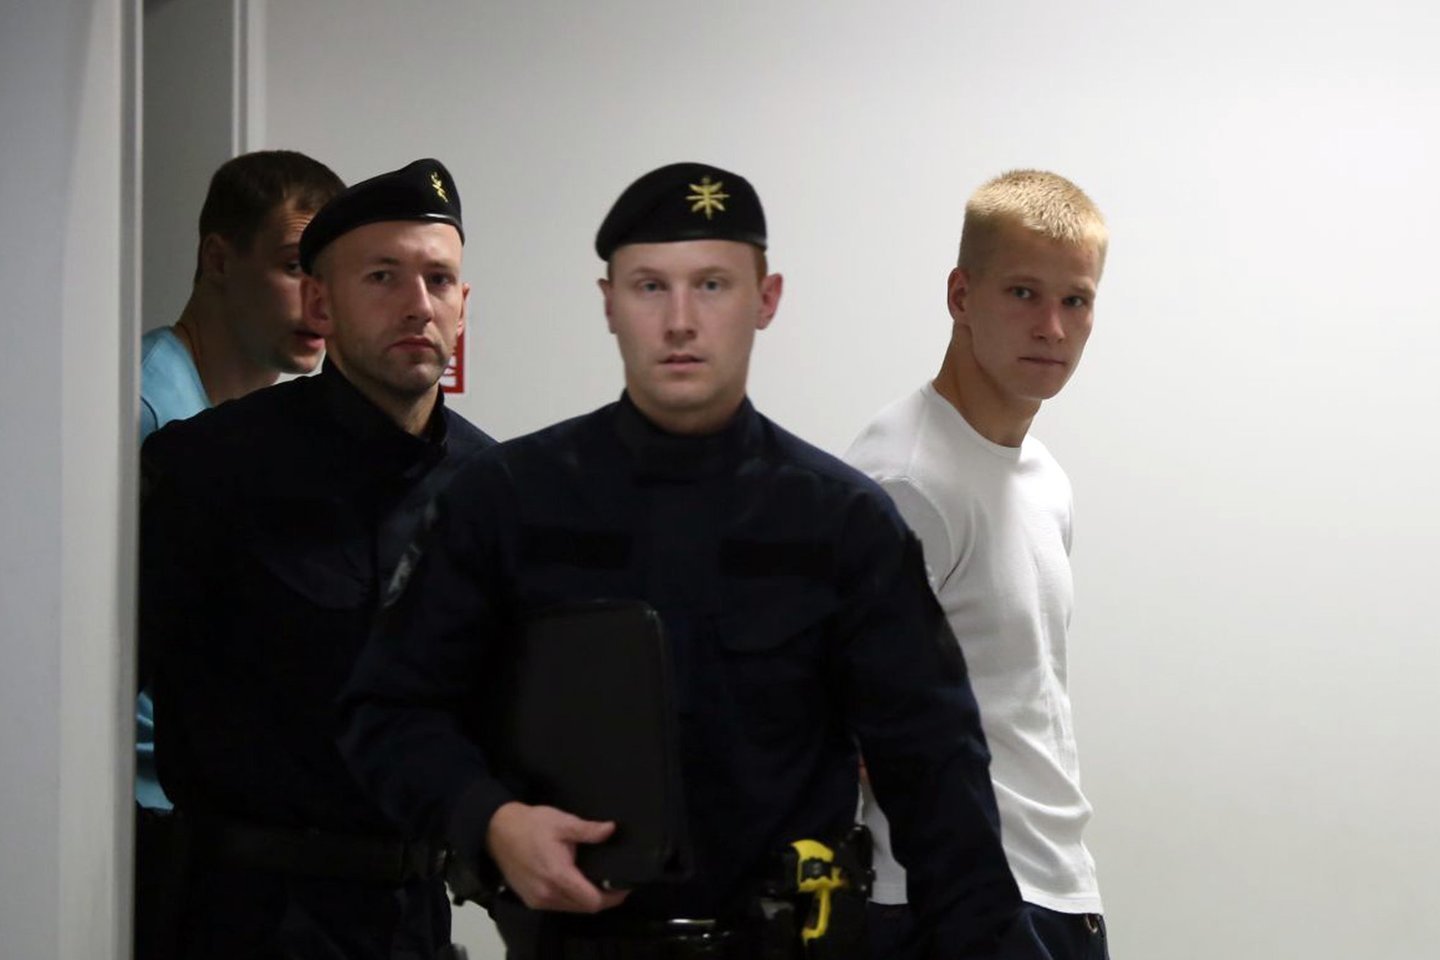  Broliai R.Gudynas ir R.Ščesnavičius teisiamųjų suole atsidūrė po jaunuolio nužudymo.<br> M.Patašiaus nuotr.